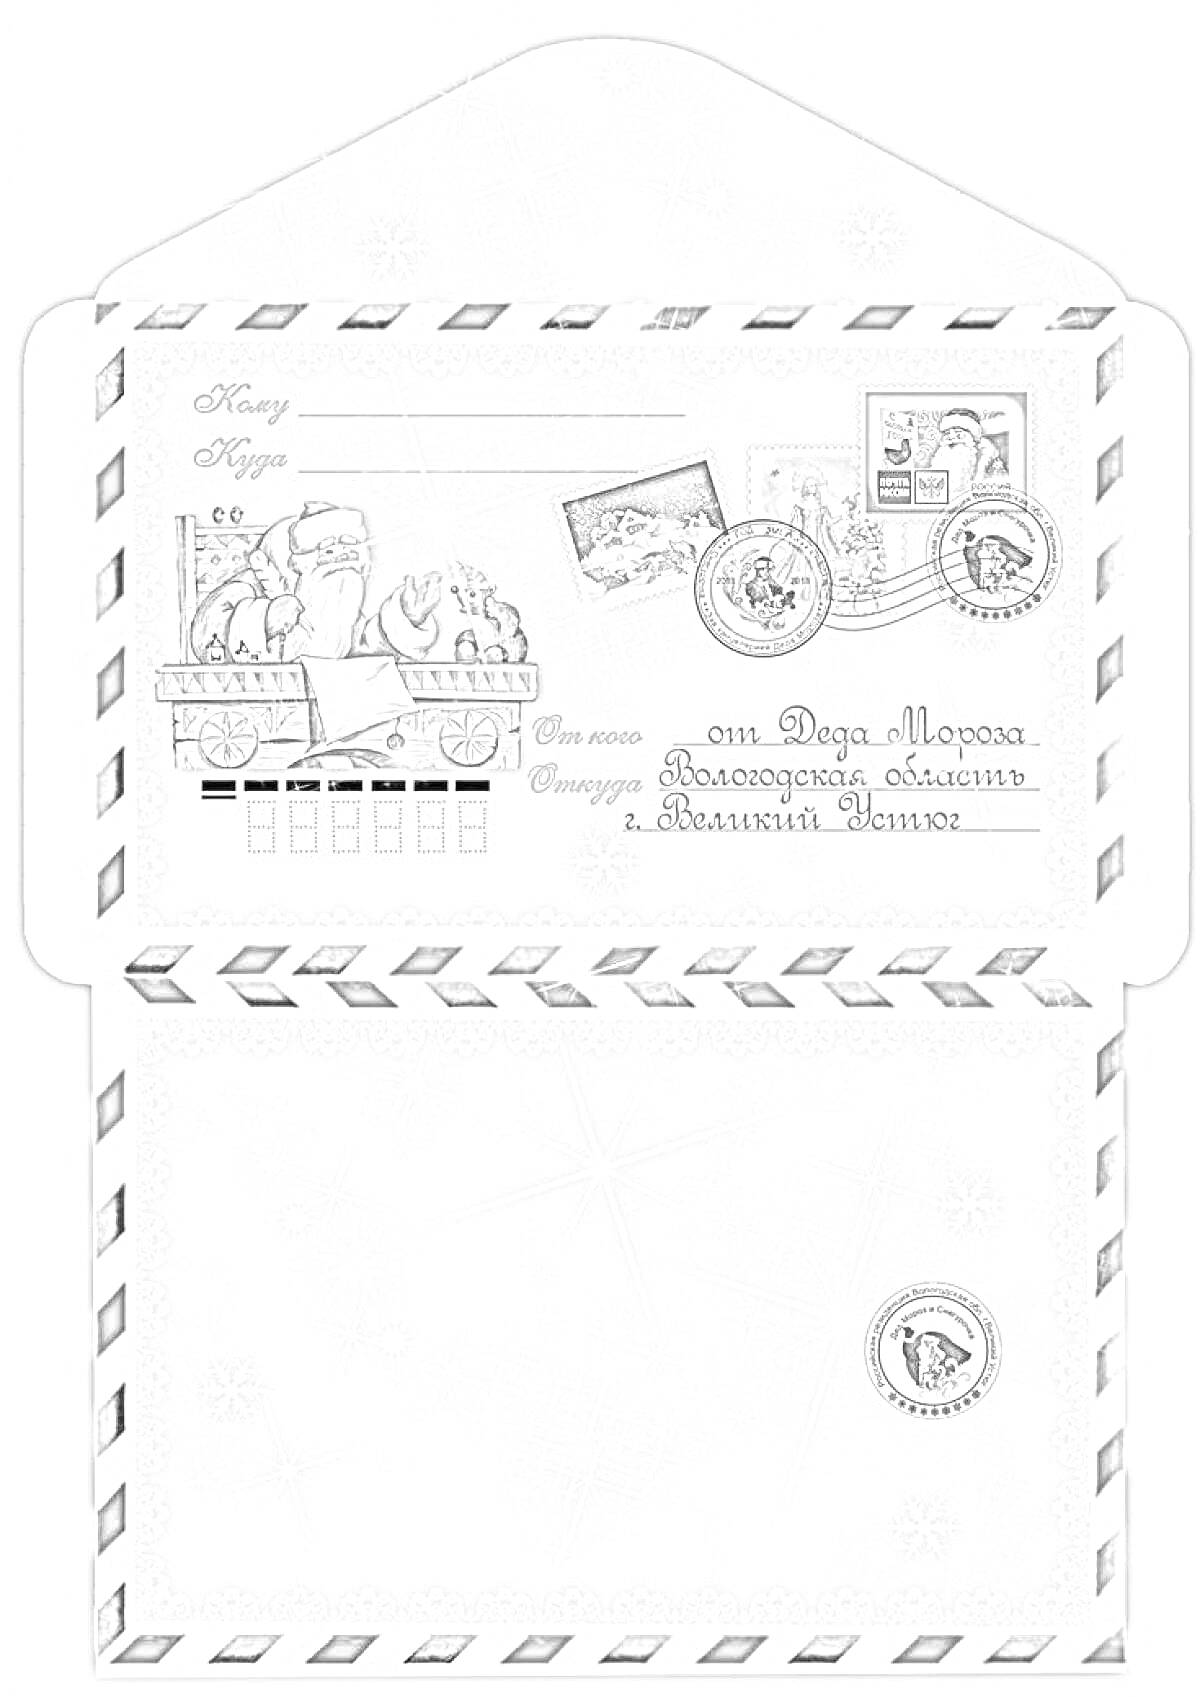 Конверт для письма Деду Морозу с изображением Деда Мороза за столом, марками и печатями, снежинками, на фоне голубого снега, с красно-синей окантовкой